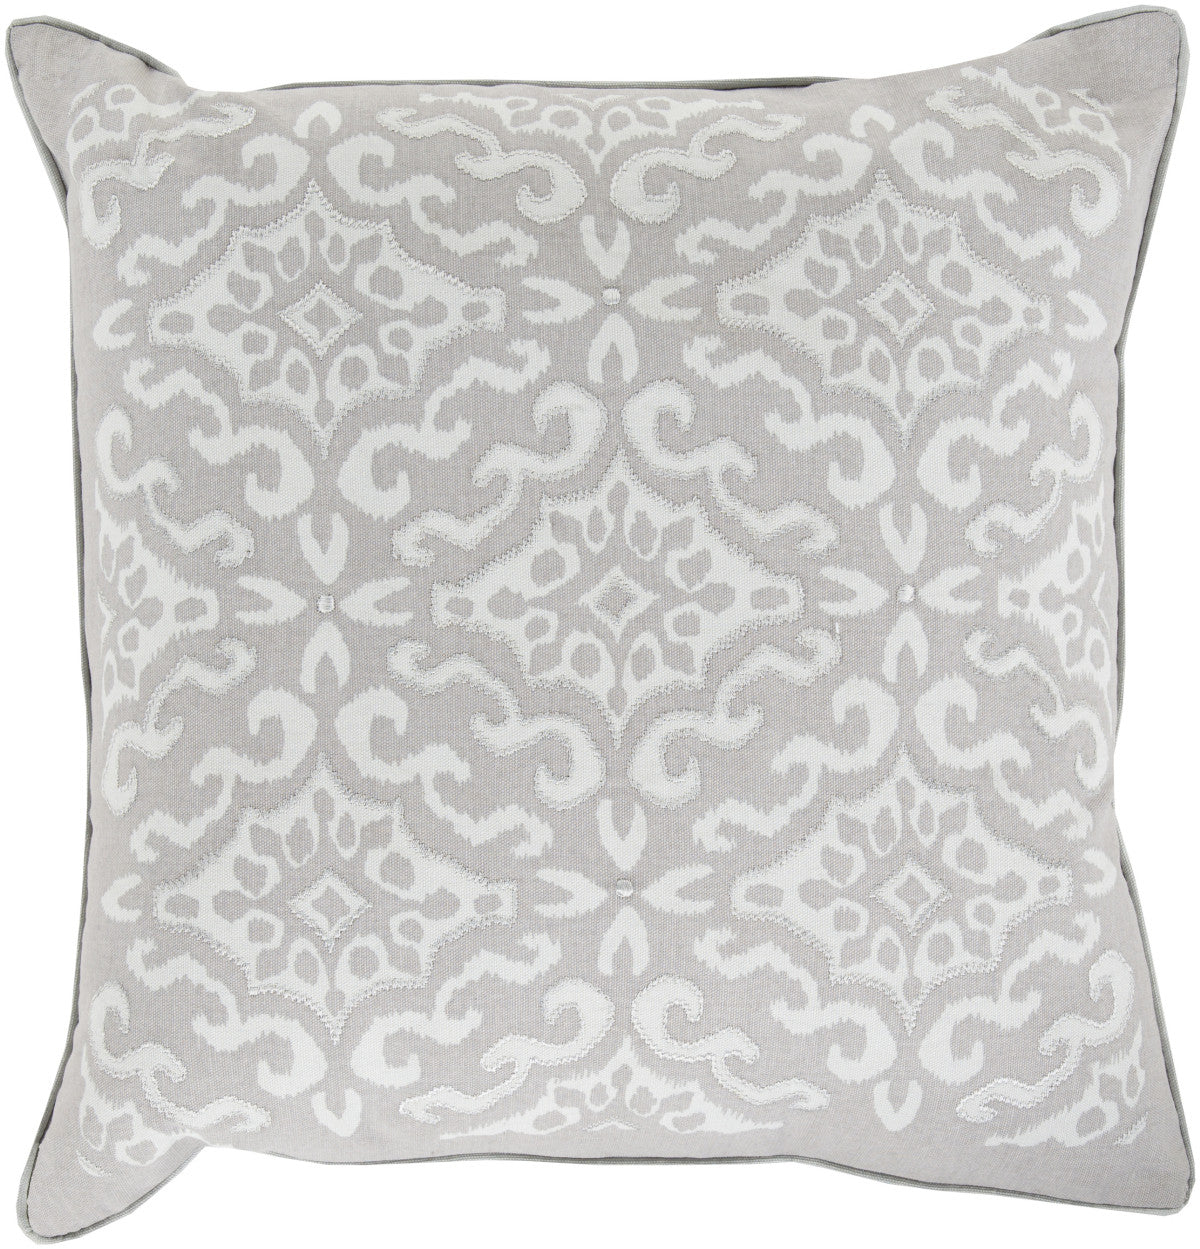 Surya Ikat Elegance in KSI-004 Pillow by Kate Spain